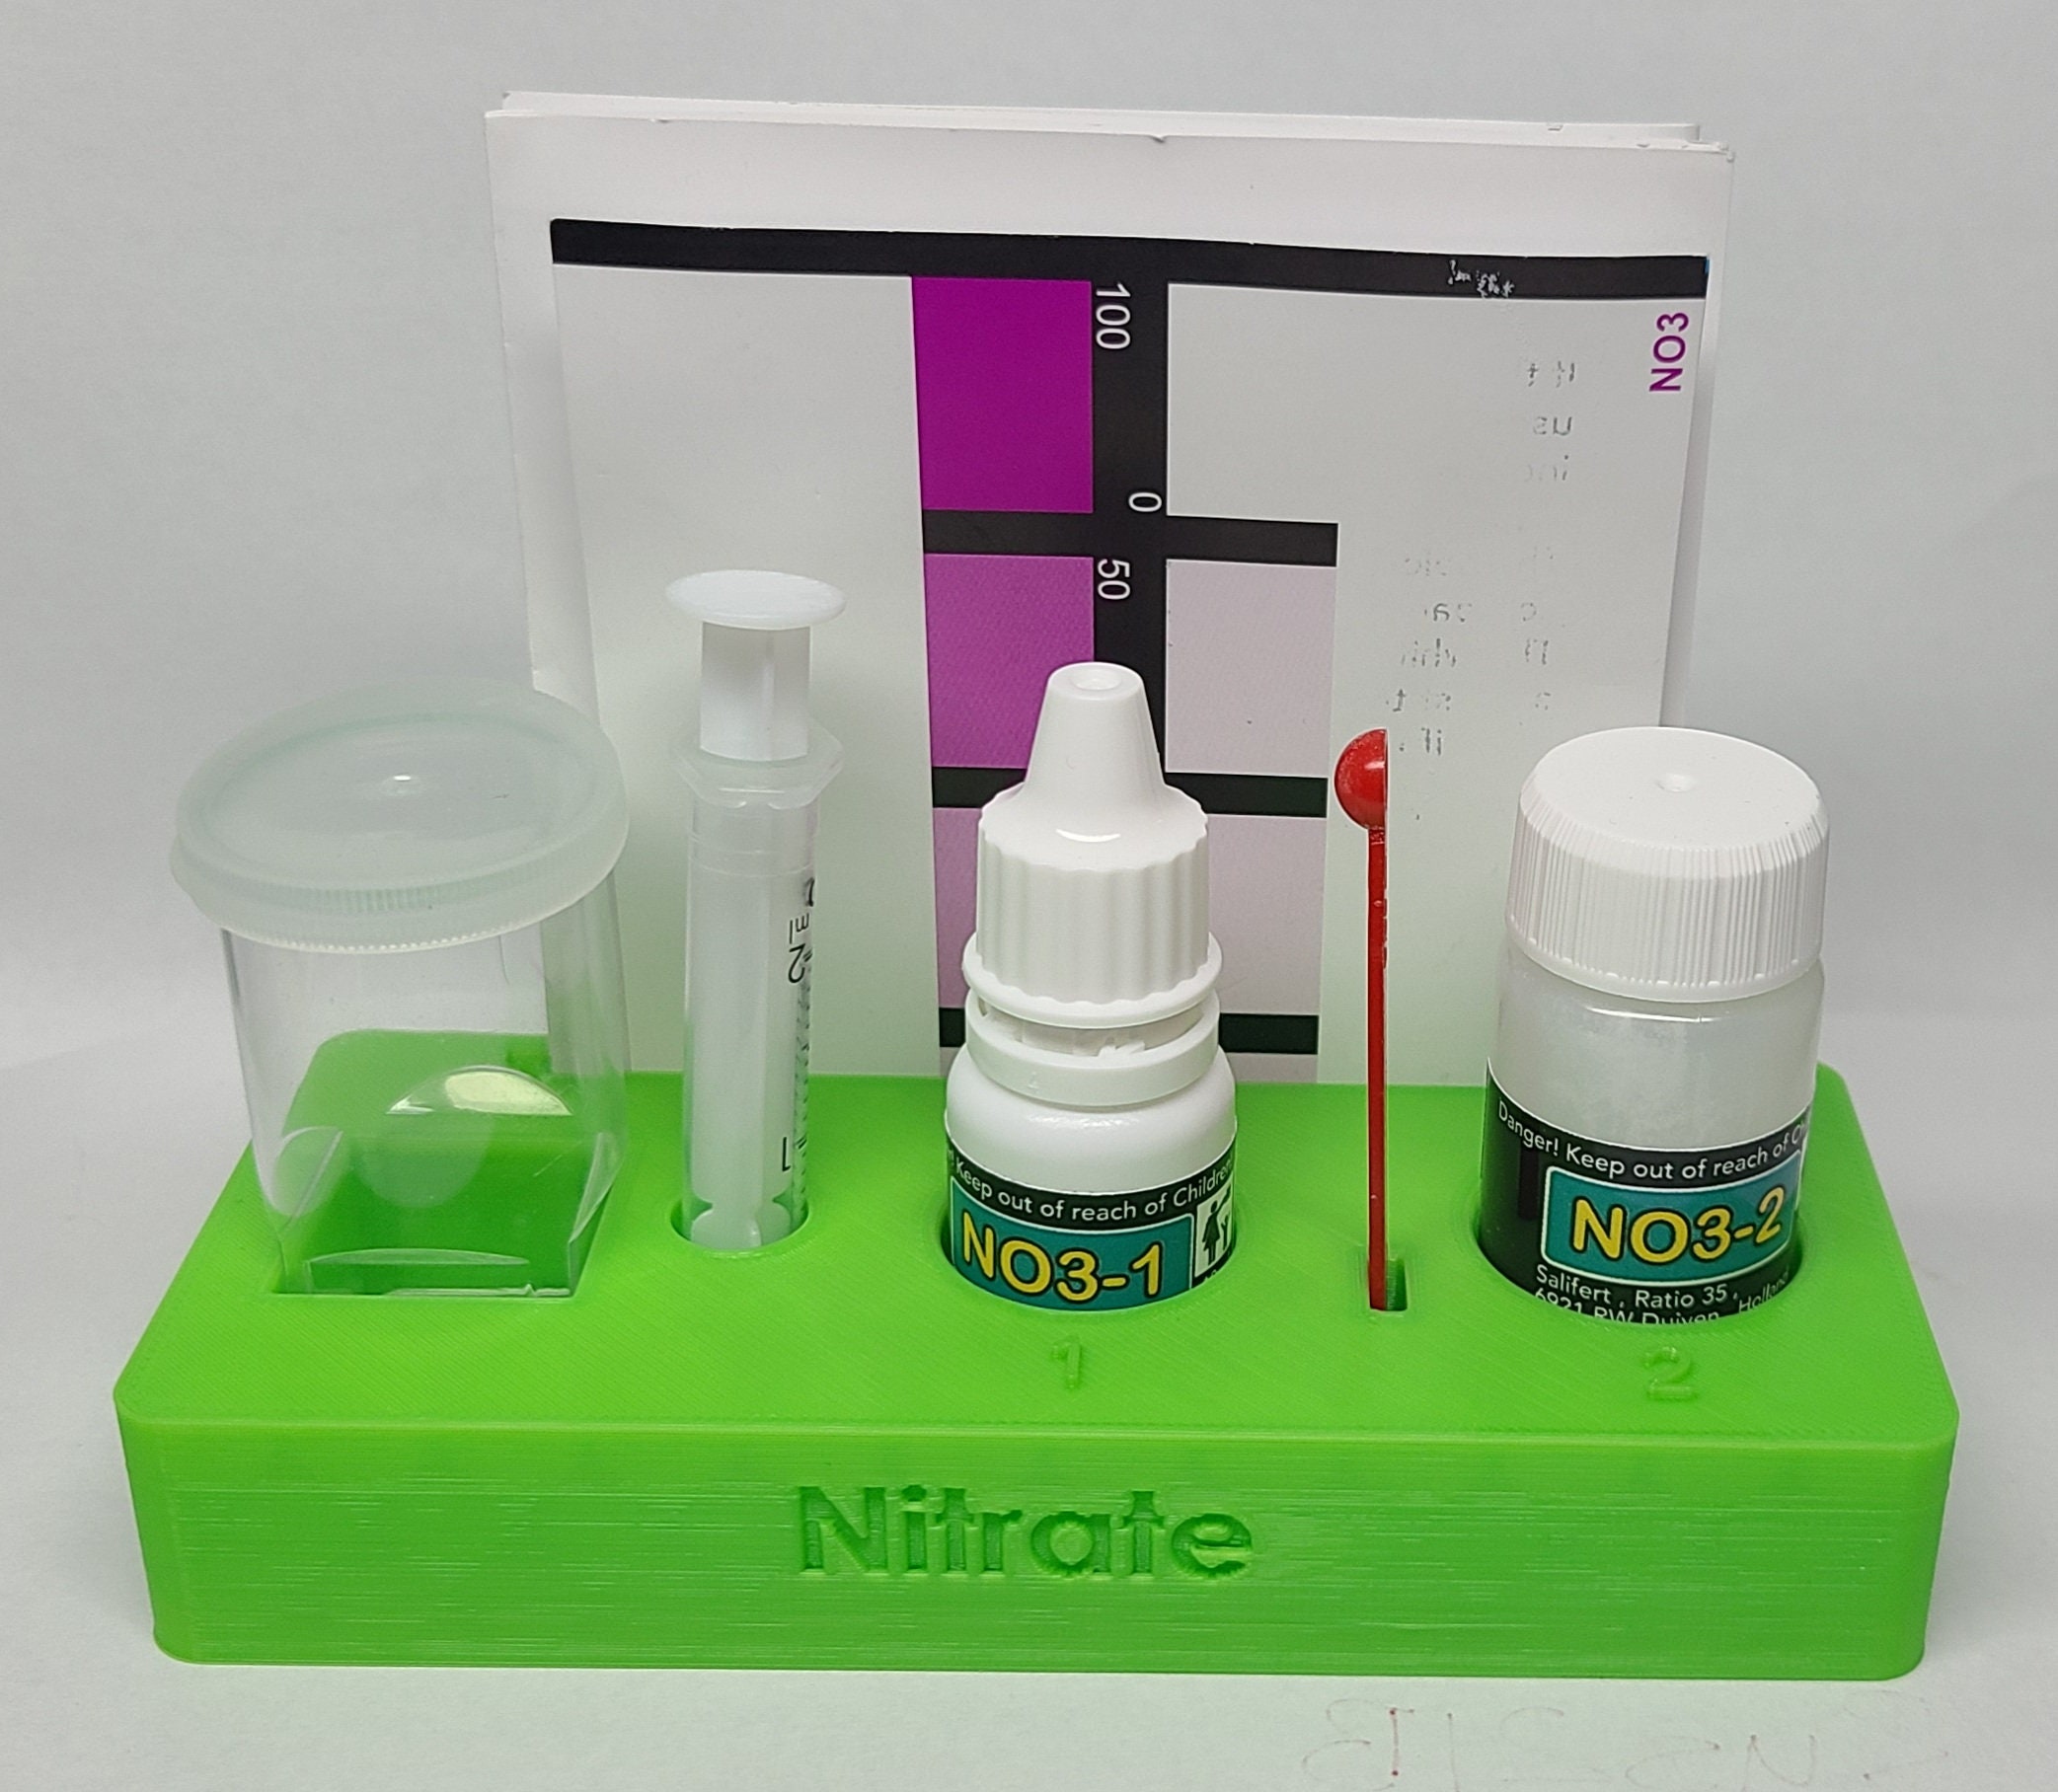  Salifert Nitrate (No3) Test Kit : Aquarium Test Kits : Pet  Supplies